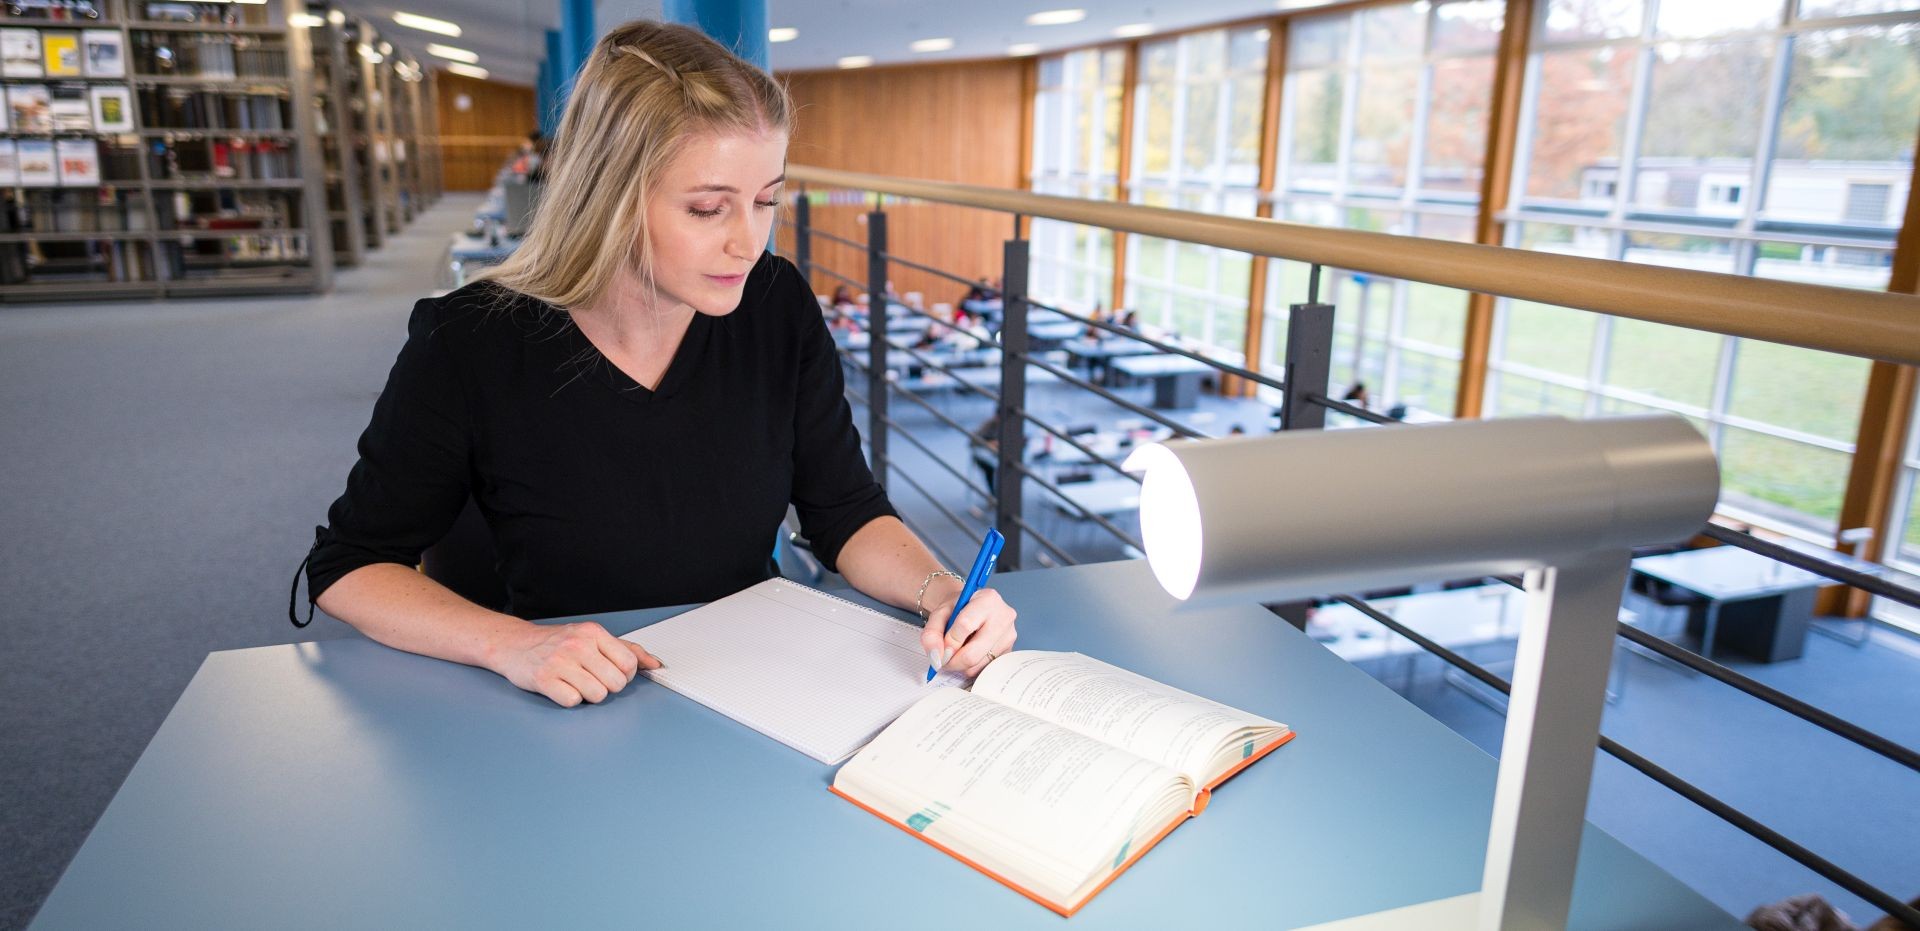 Studentin arbeitet am Schreibtisch in einer Bibliothek